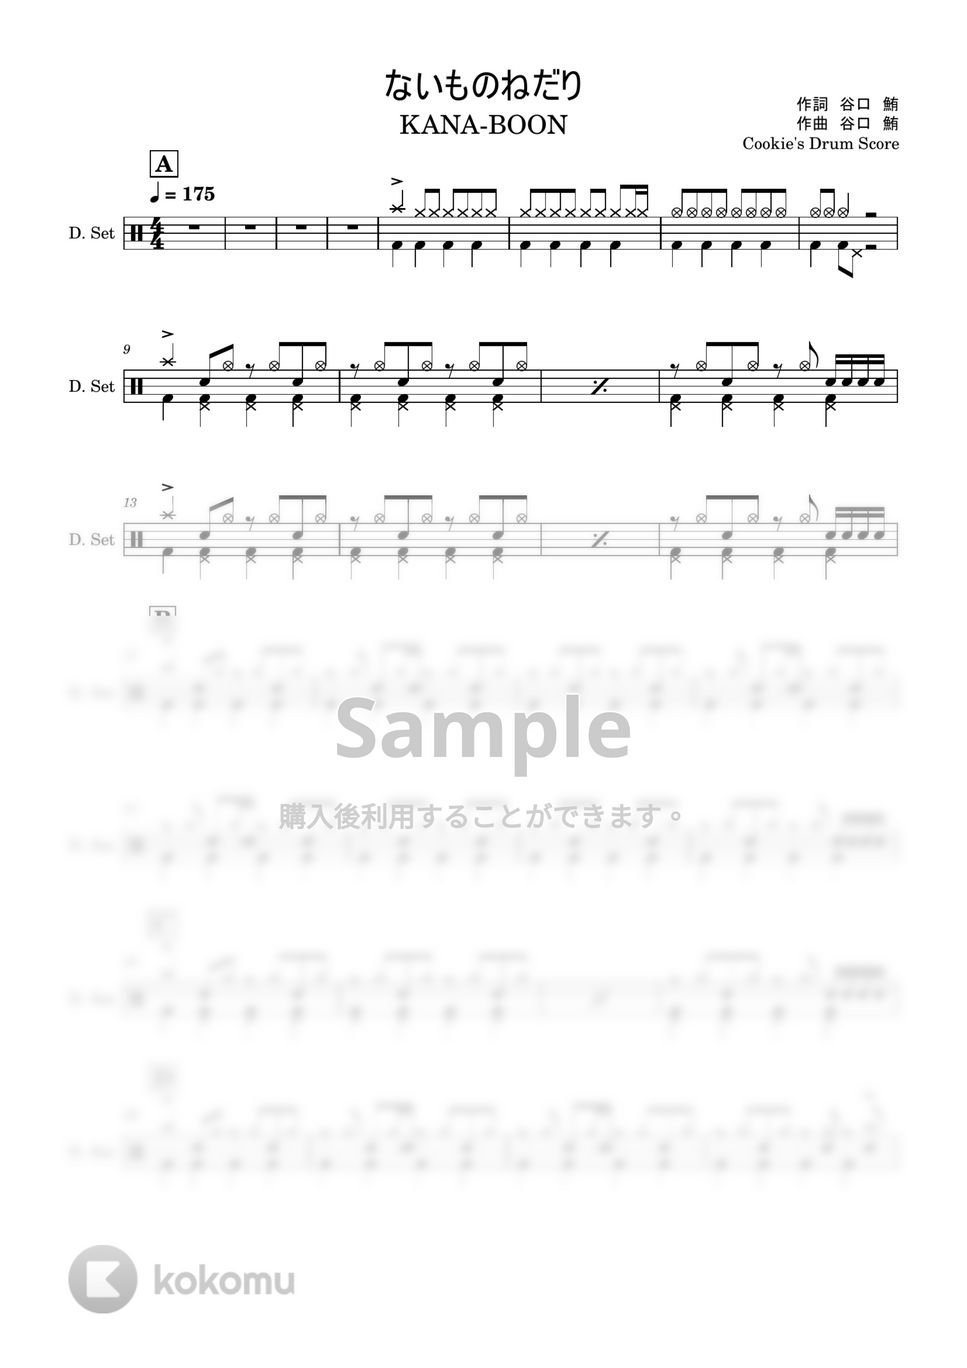 KANA-BOON - 【ドラム楽譜】 ないものねだり / KANA-BOON - Naimononedari / KANA-BOON 【DrumScore】 by Cookie's Drum Score